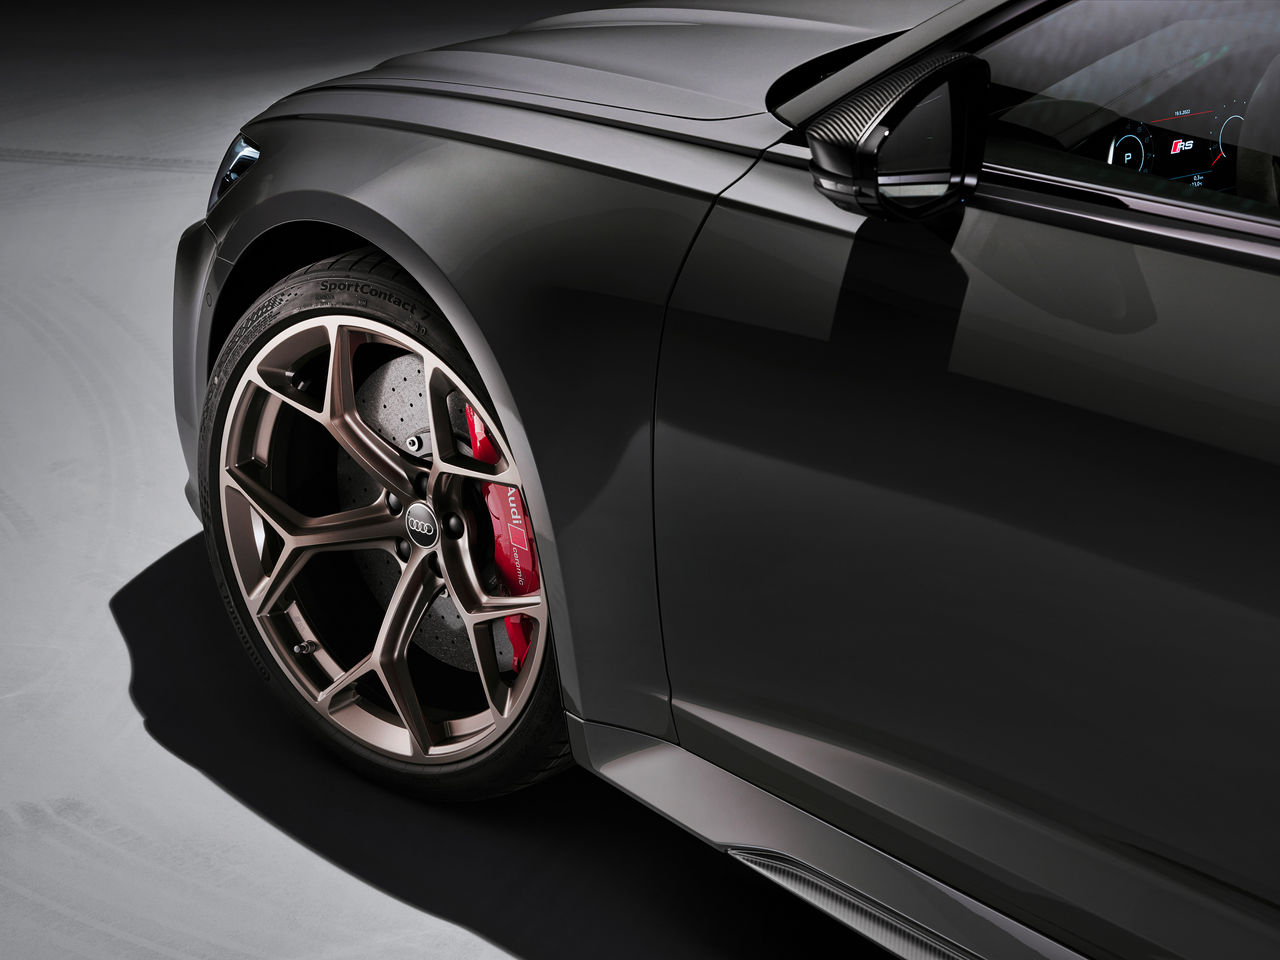 Audi vertraut für den RS 6 Avant performance auf SportContact 7-Reifen